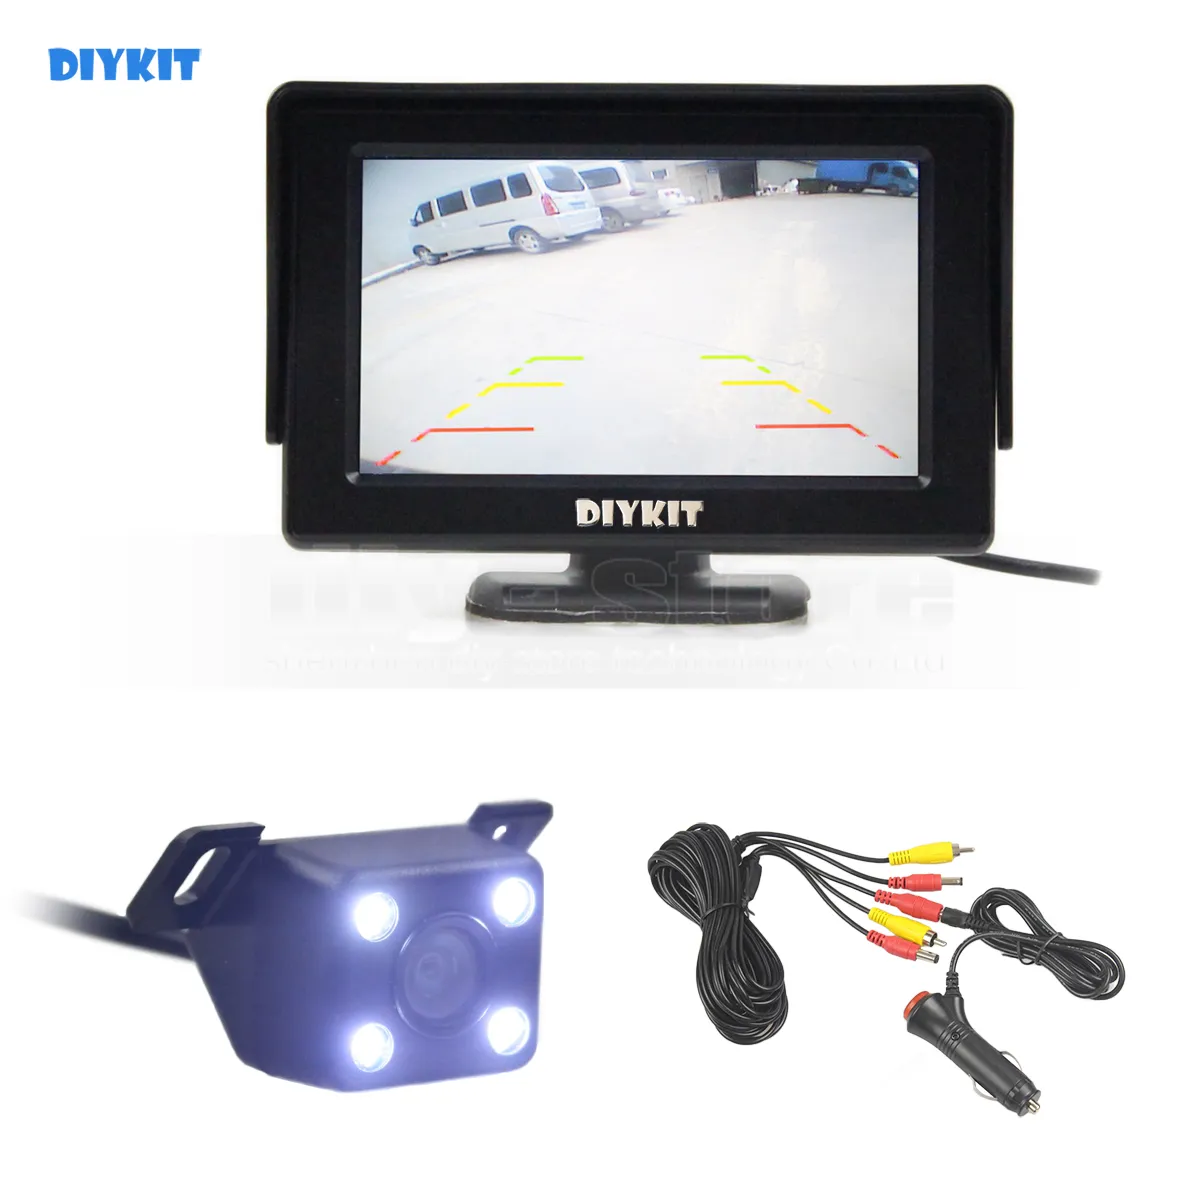 DIYKIT Wlred 4.3 pouces TFT LCD moniteur de voiture + LED Vision nocturne vue arrière caméra de voiture système d'assistance au stationnement Ki